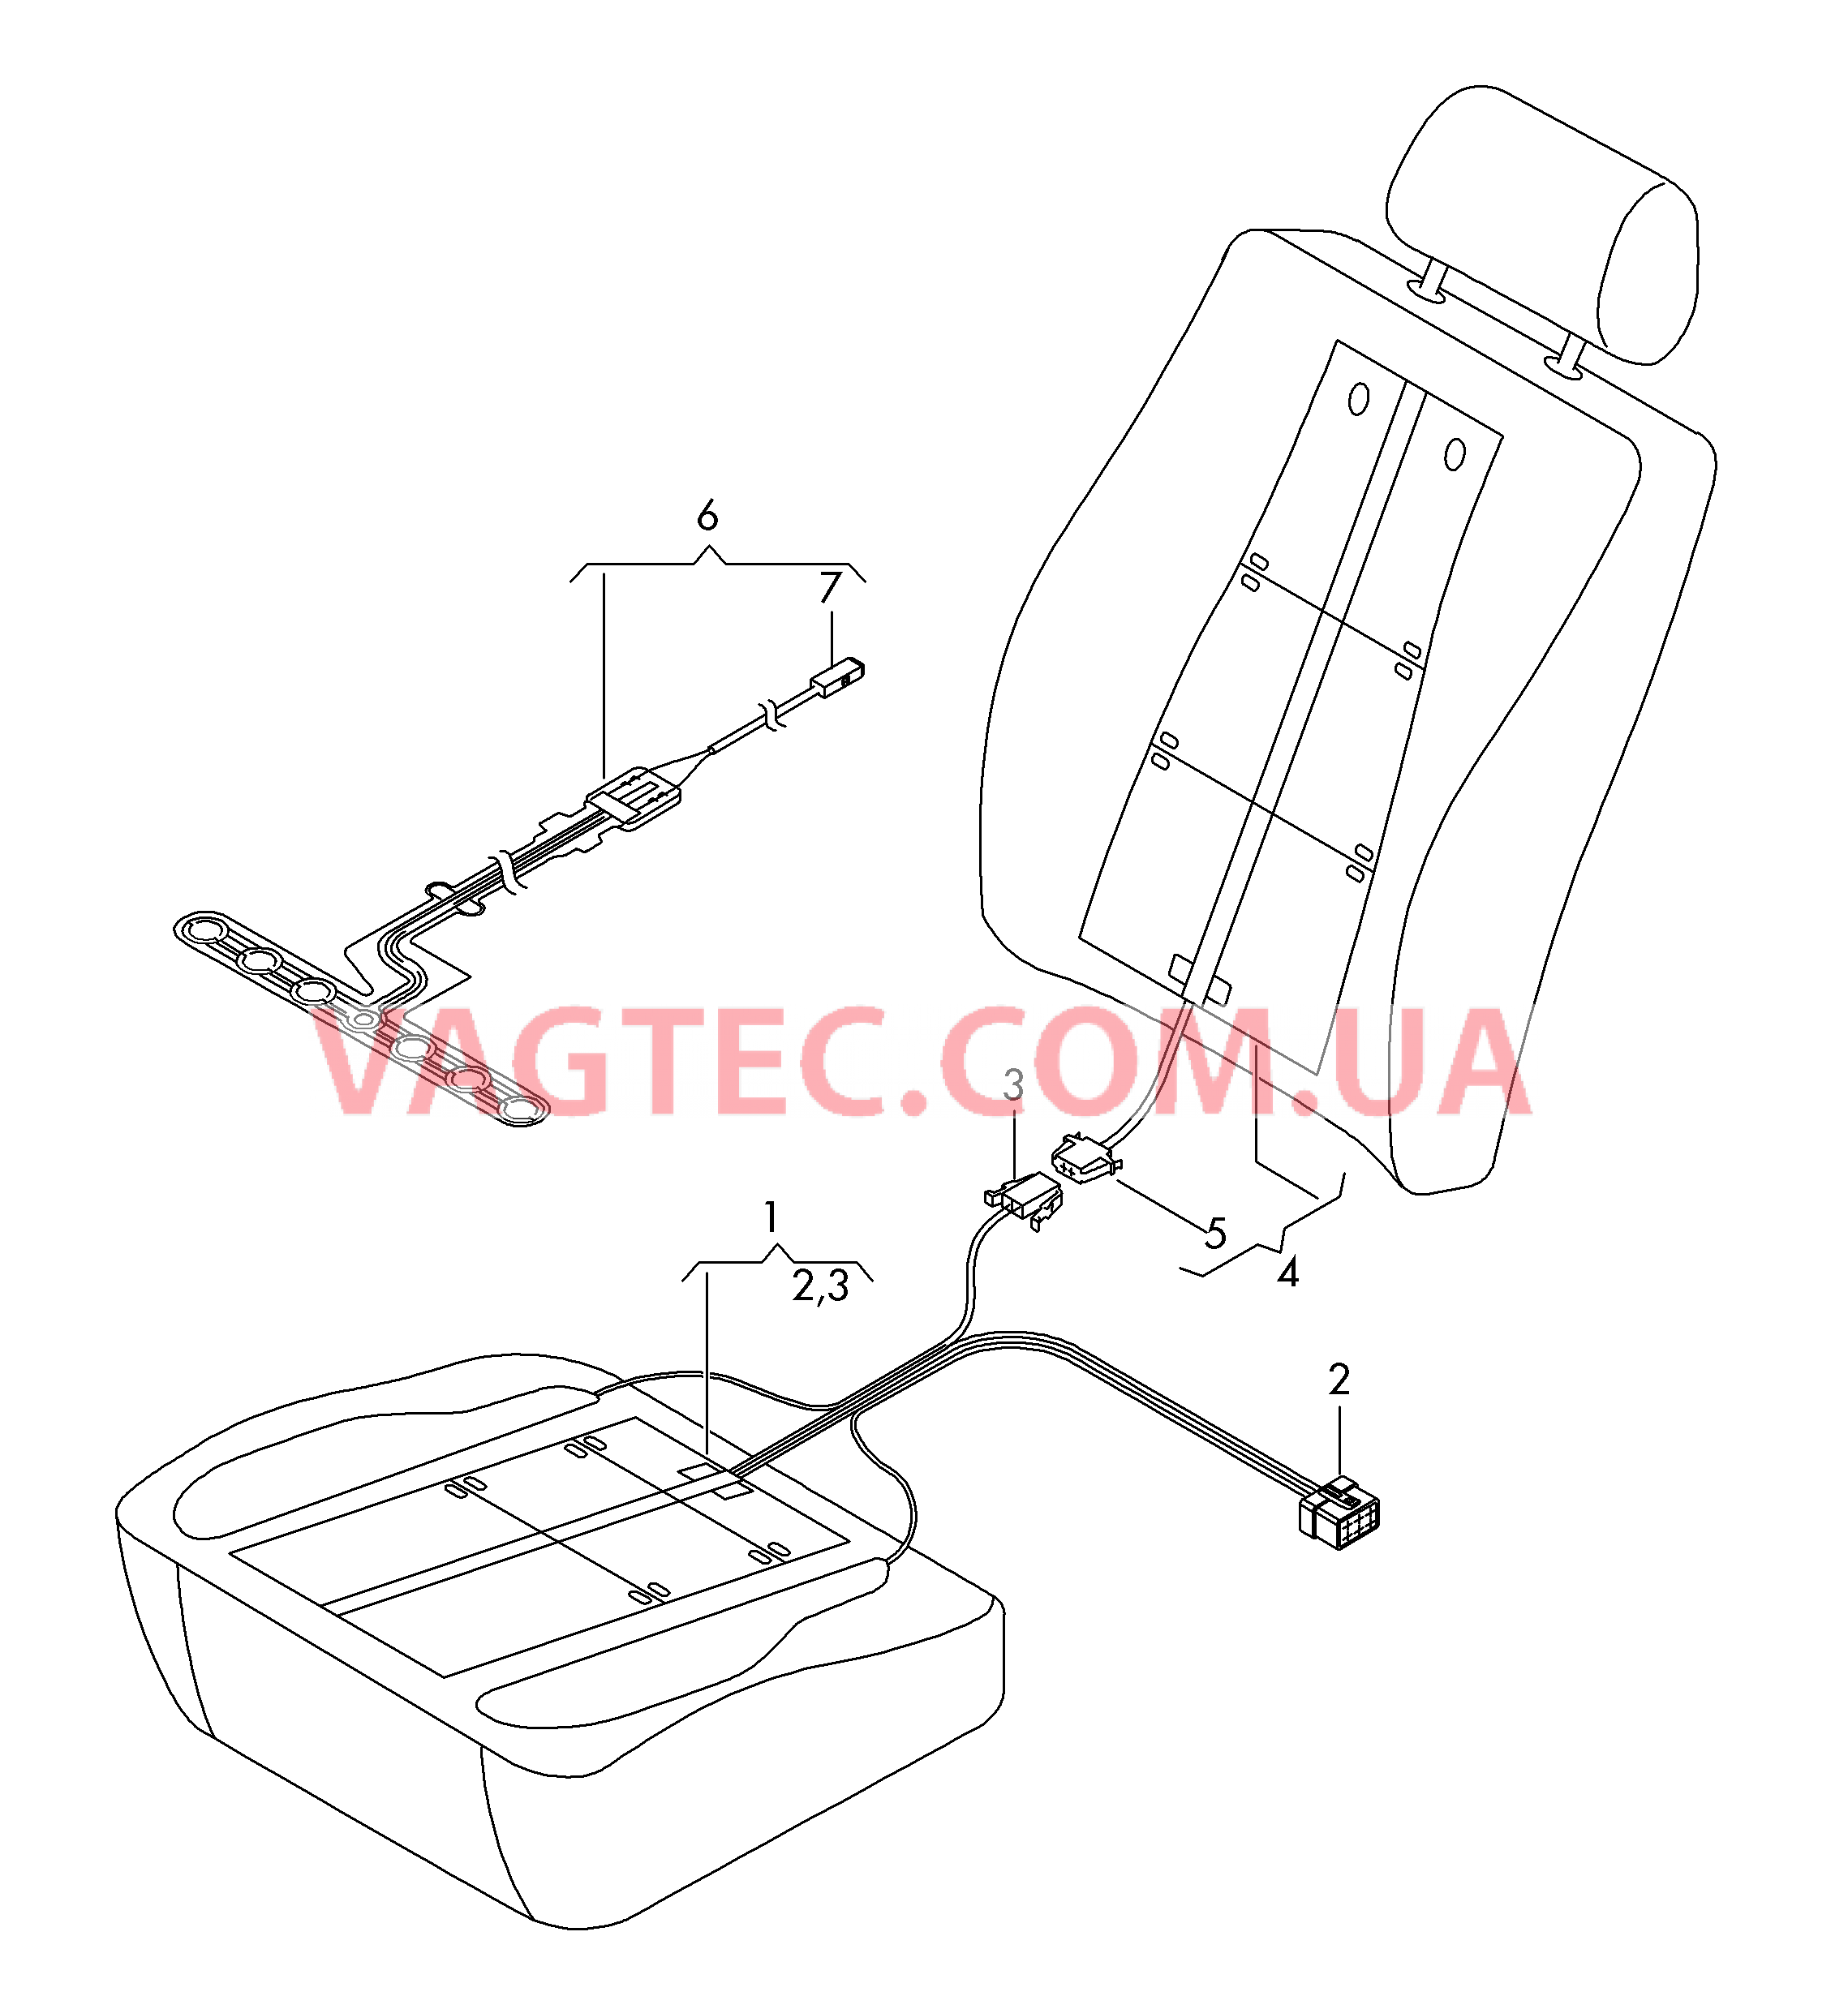 Нагревательный элемент спинки и подушки сиденья  Вставка распознавания занятости сиденья  для SEAT Leon 2014